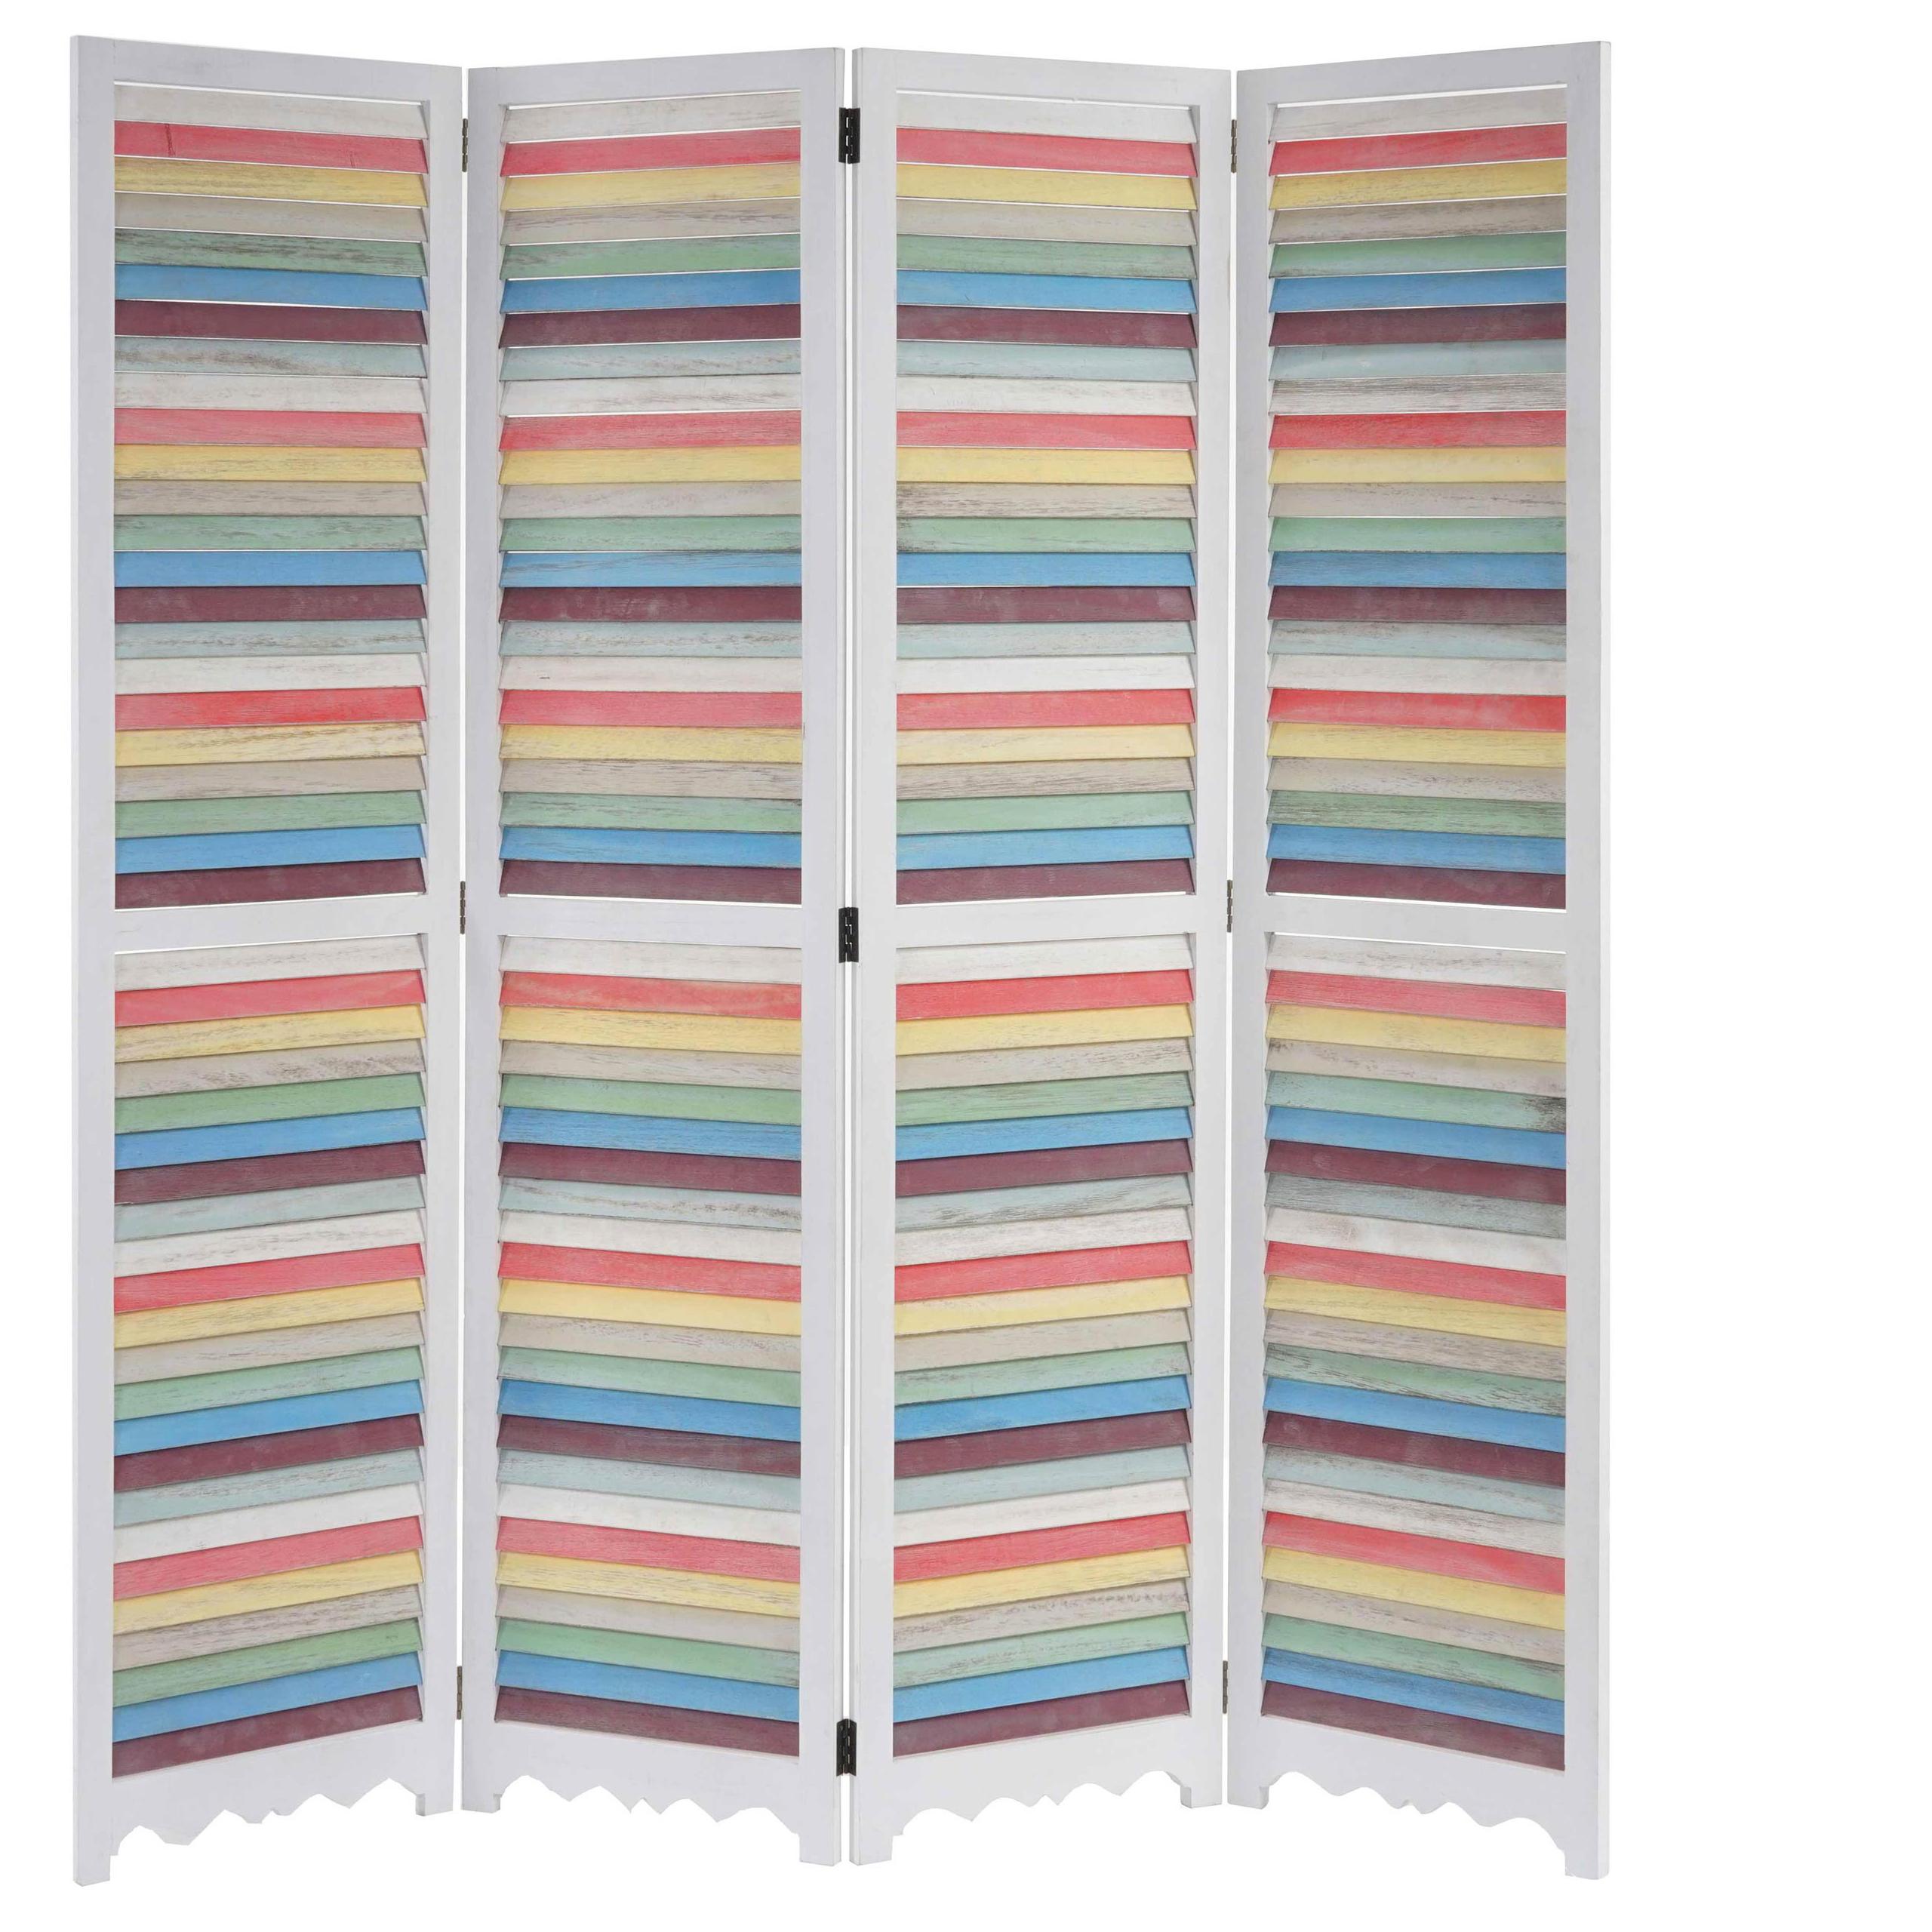 Biombo 4 paneles GERD, 170x160x2cm, Estructura de Madera en Blanco y Multicolor